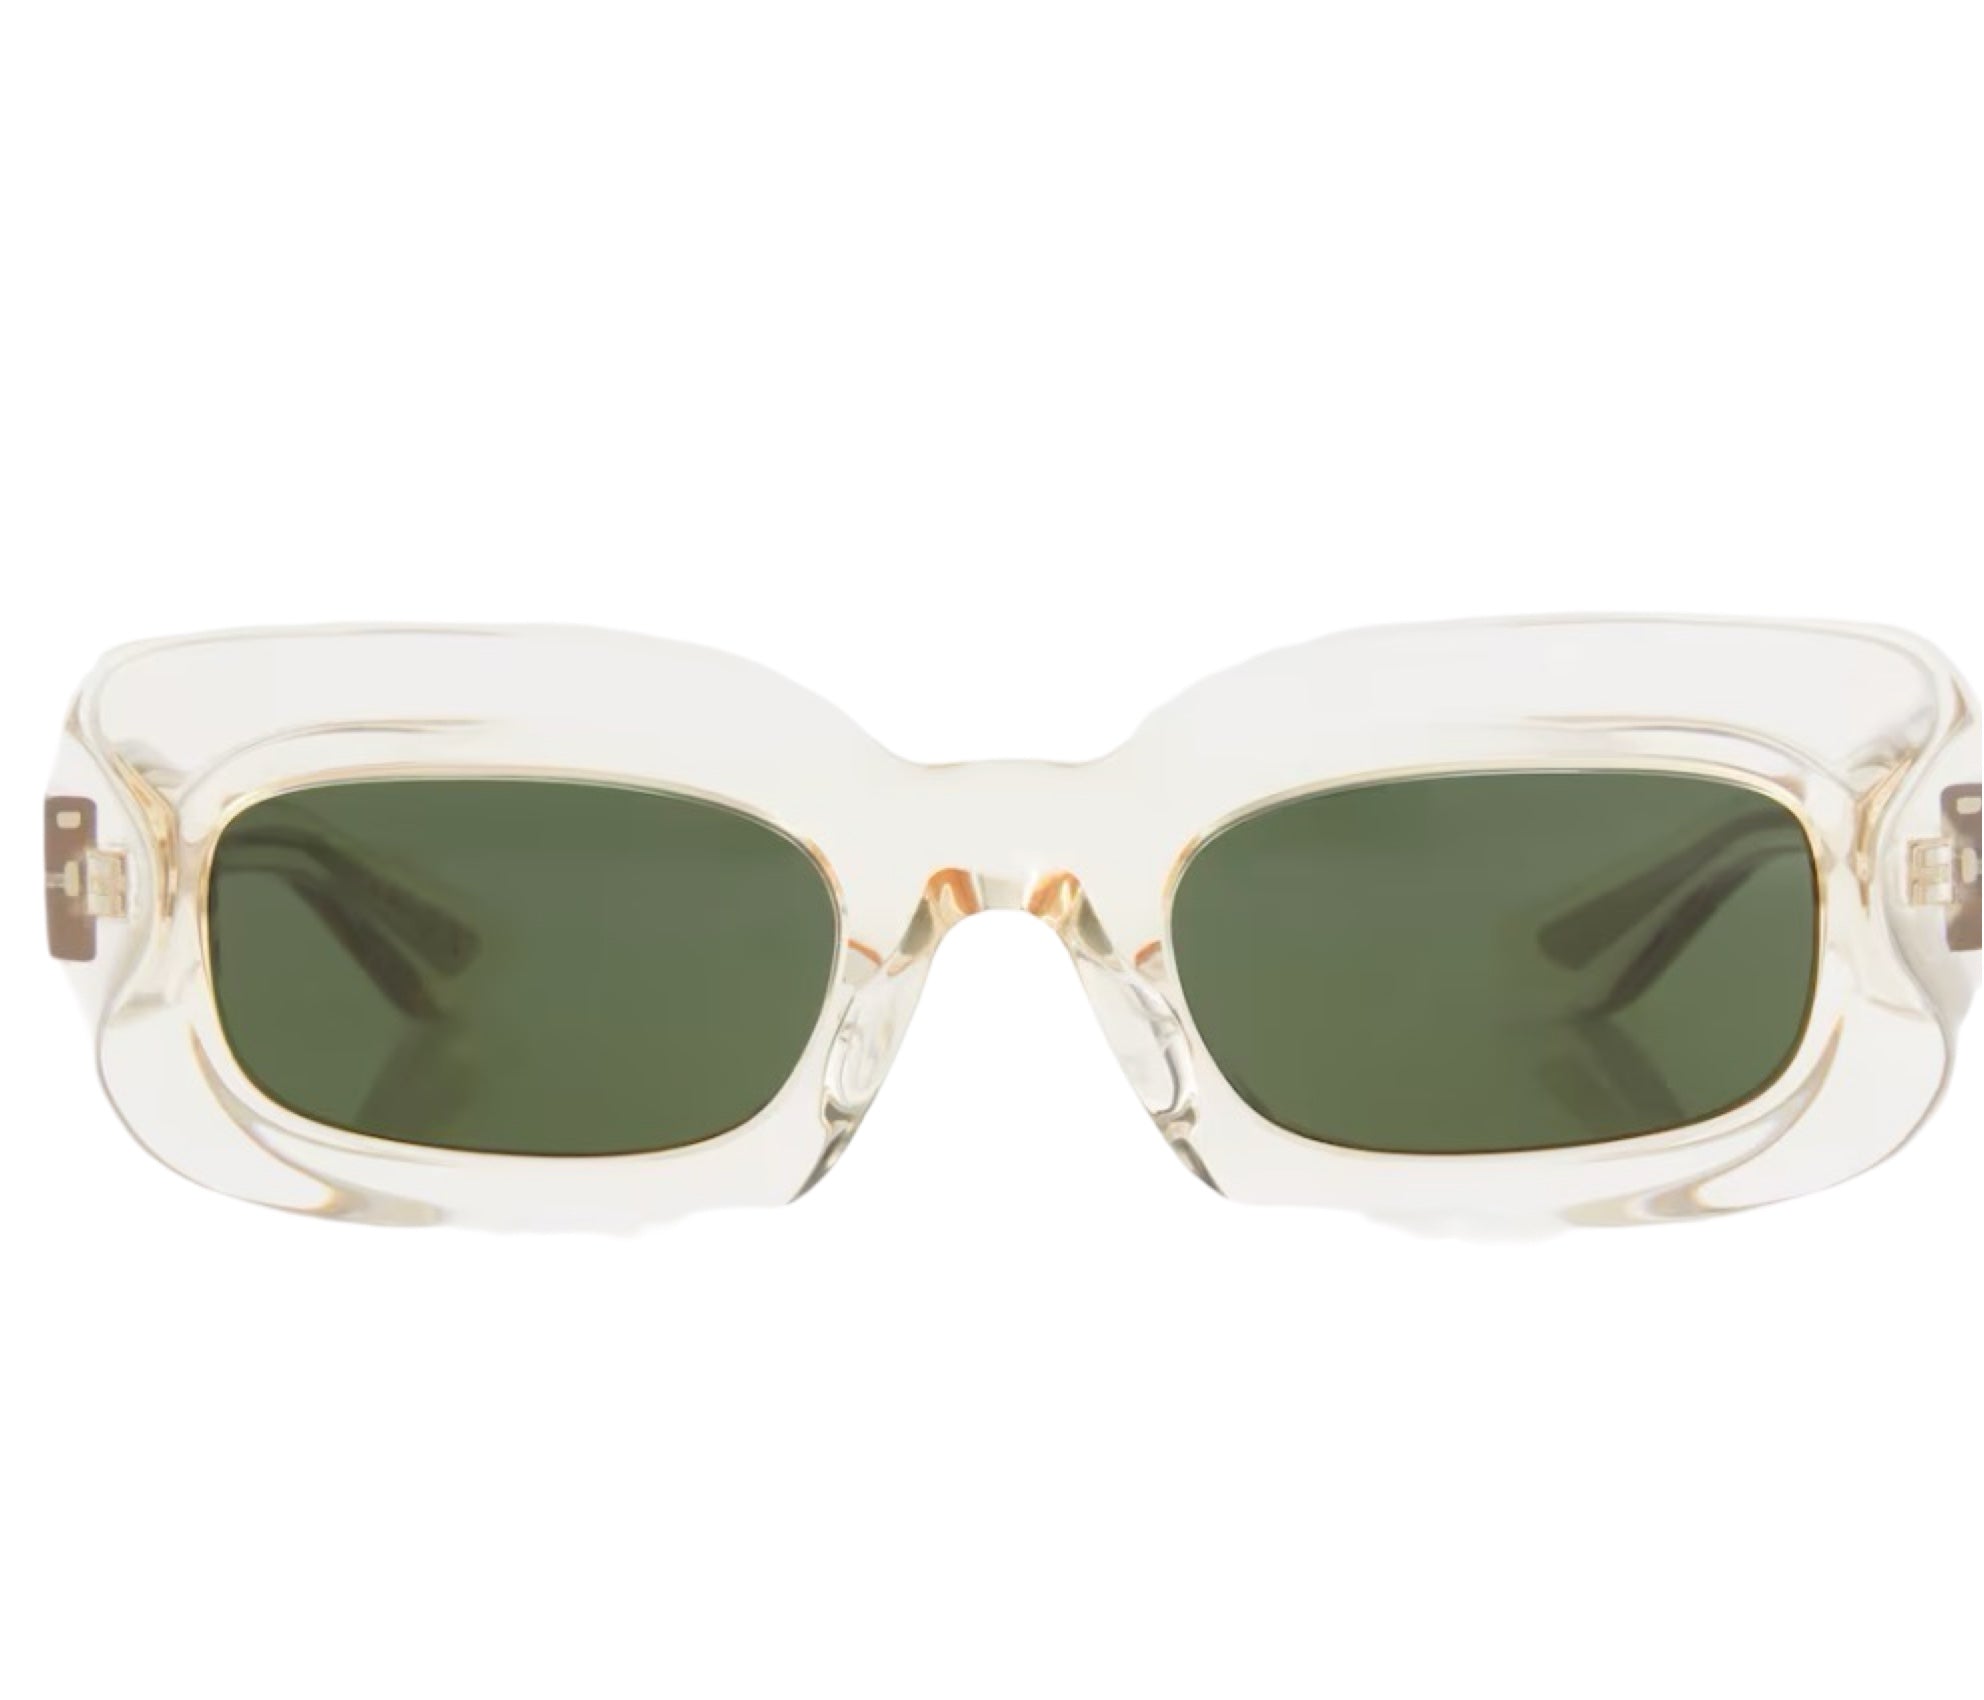 x Oliver Peoples 1966C Rectangular Sunglasses